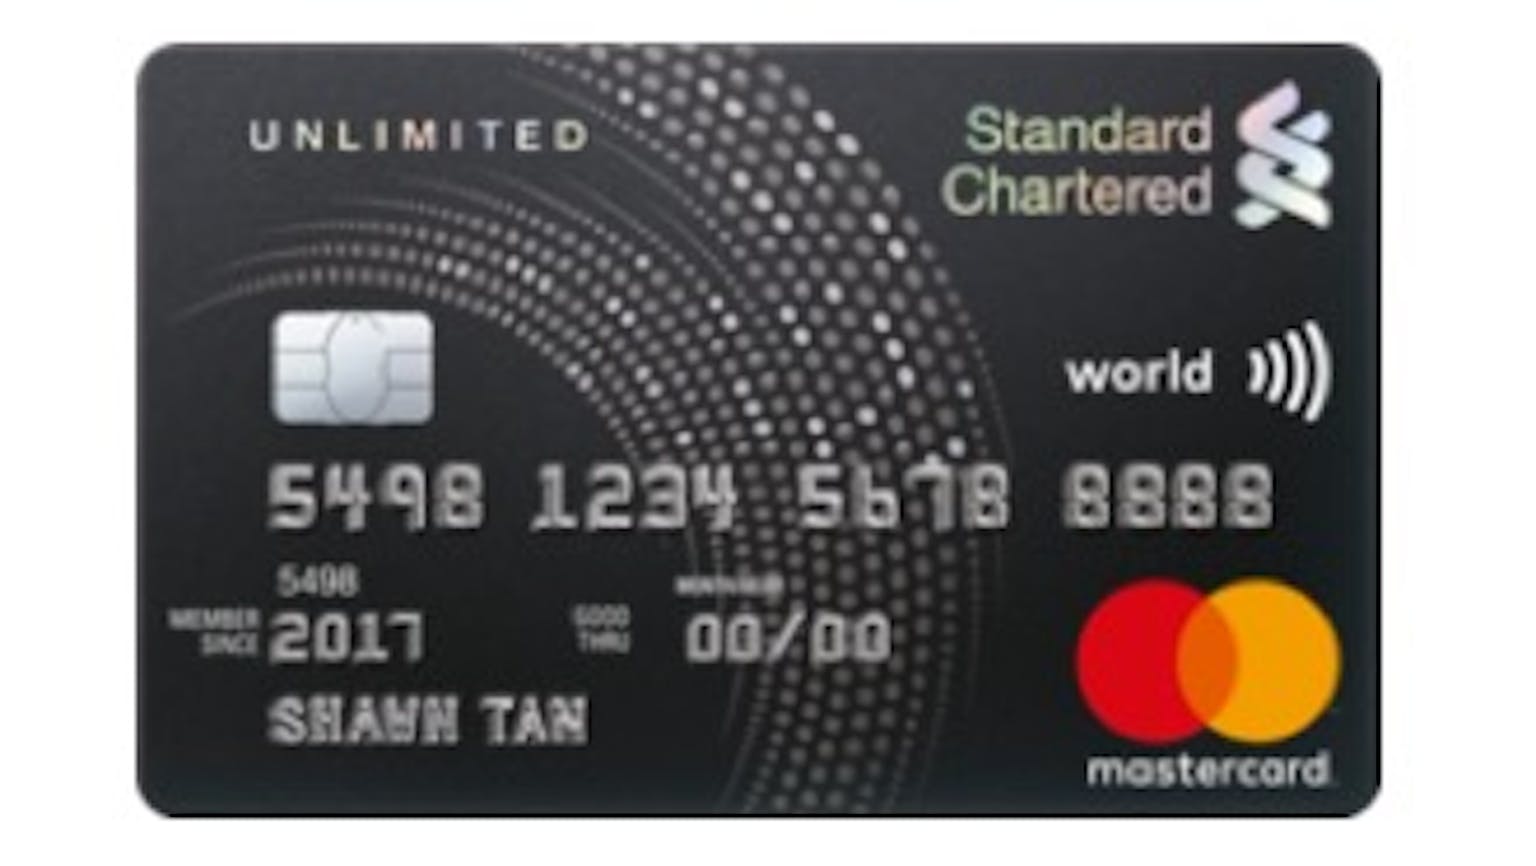 Standard Chartered Rewards+ Credit Card